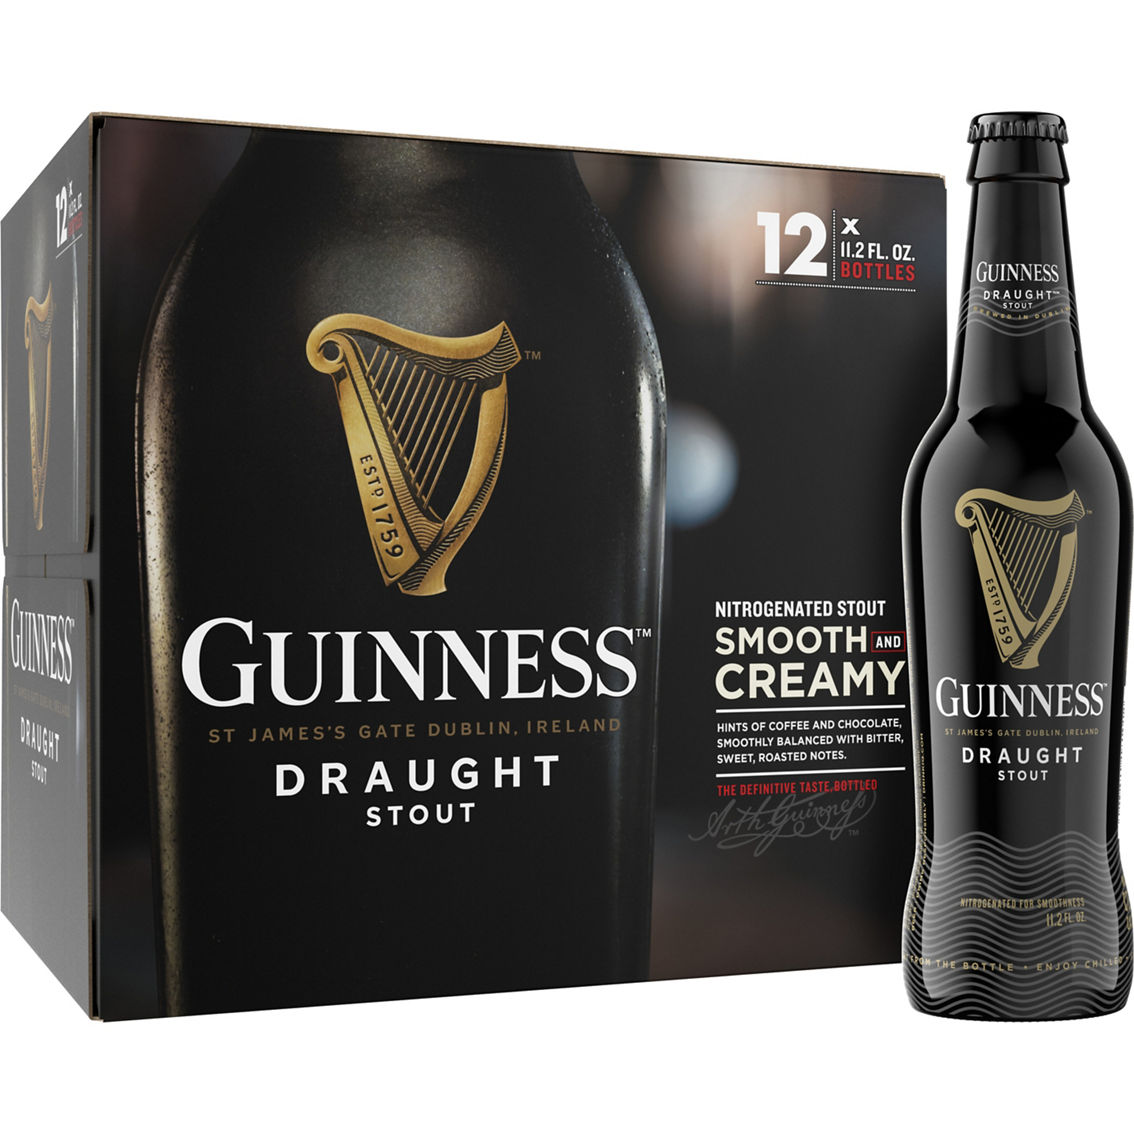 Guinness Draught 11.2 oz. Bottle 12 pk. - Image 2 of 3